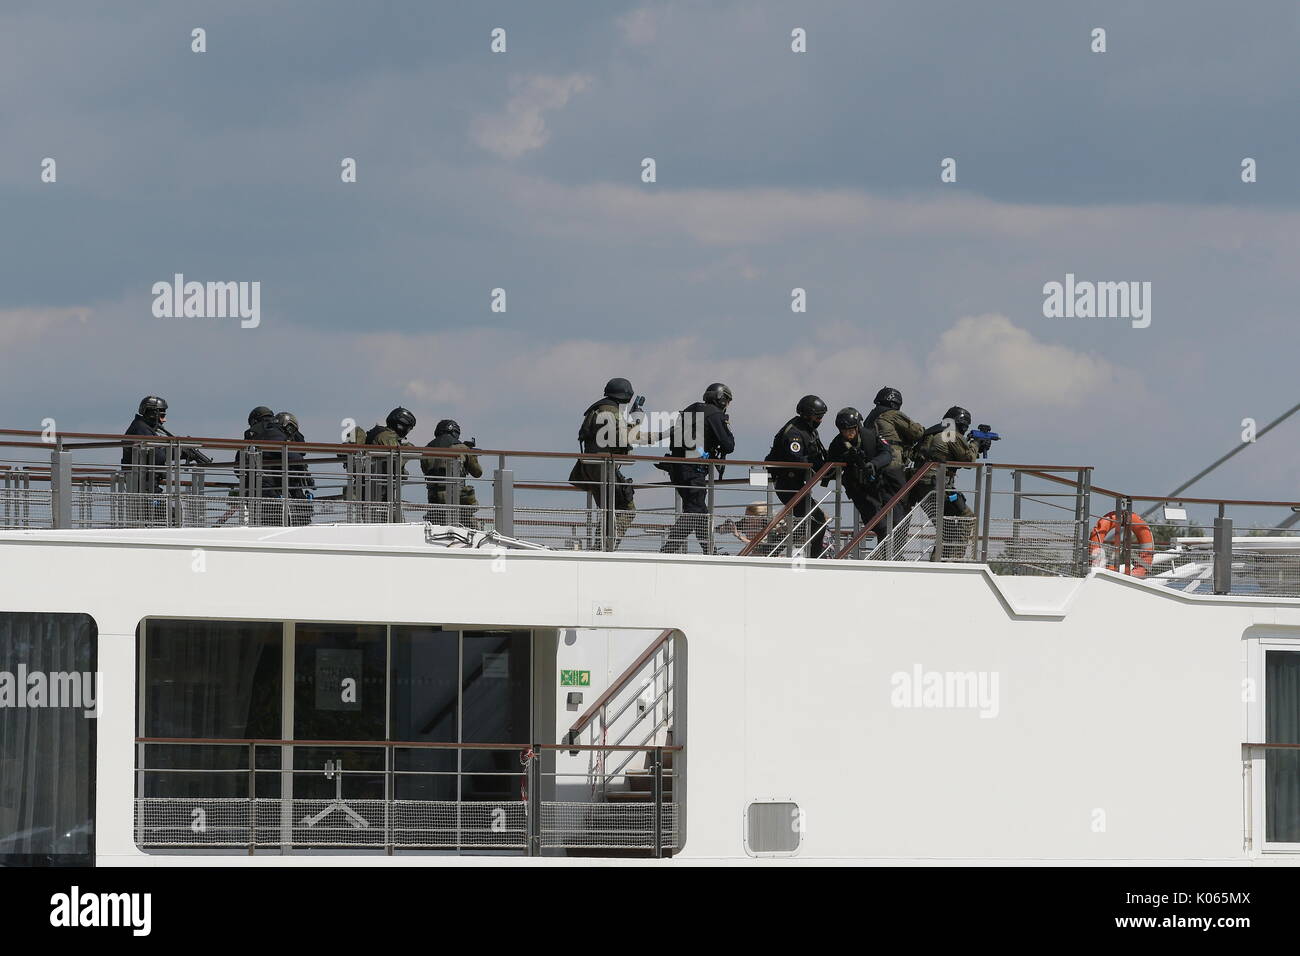 Vienne, Autriche. Août 21, 2017. EKO Cobra / DSE et unités spéciales de police internationale de l'Allemagne, la Slovaquie, la Slovénie et la Hongrie ont pris part à un exercice de terrorisme à Vienne. Allemagne : les responsables de la commande des opérations spéciales (SEK) Nordbayern, le commandement des opérations spéciales (SEK) Bavière méridionale avec un bateau d'accès ainsi que la police fédérale des frontières GSG 9 ''. Slovaquie : Les fonctionnaires de l'unité "antiterror LYNX-Command' avec deux hélicoptères. Credit : Franz Perc/Alamy Live News Banque D'Images